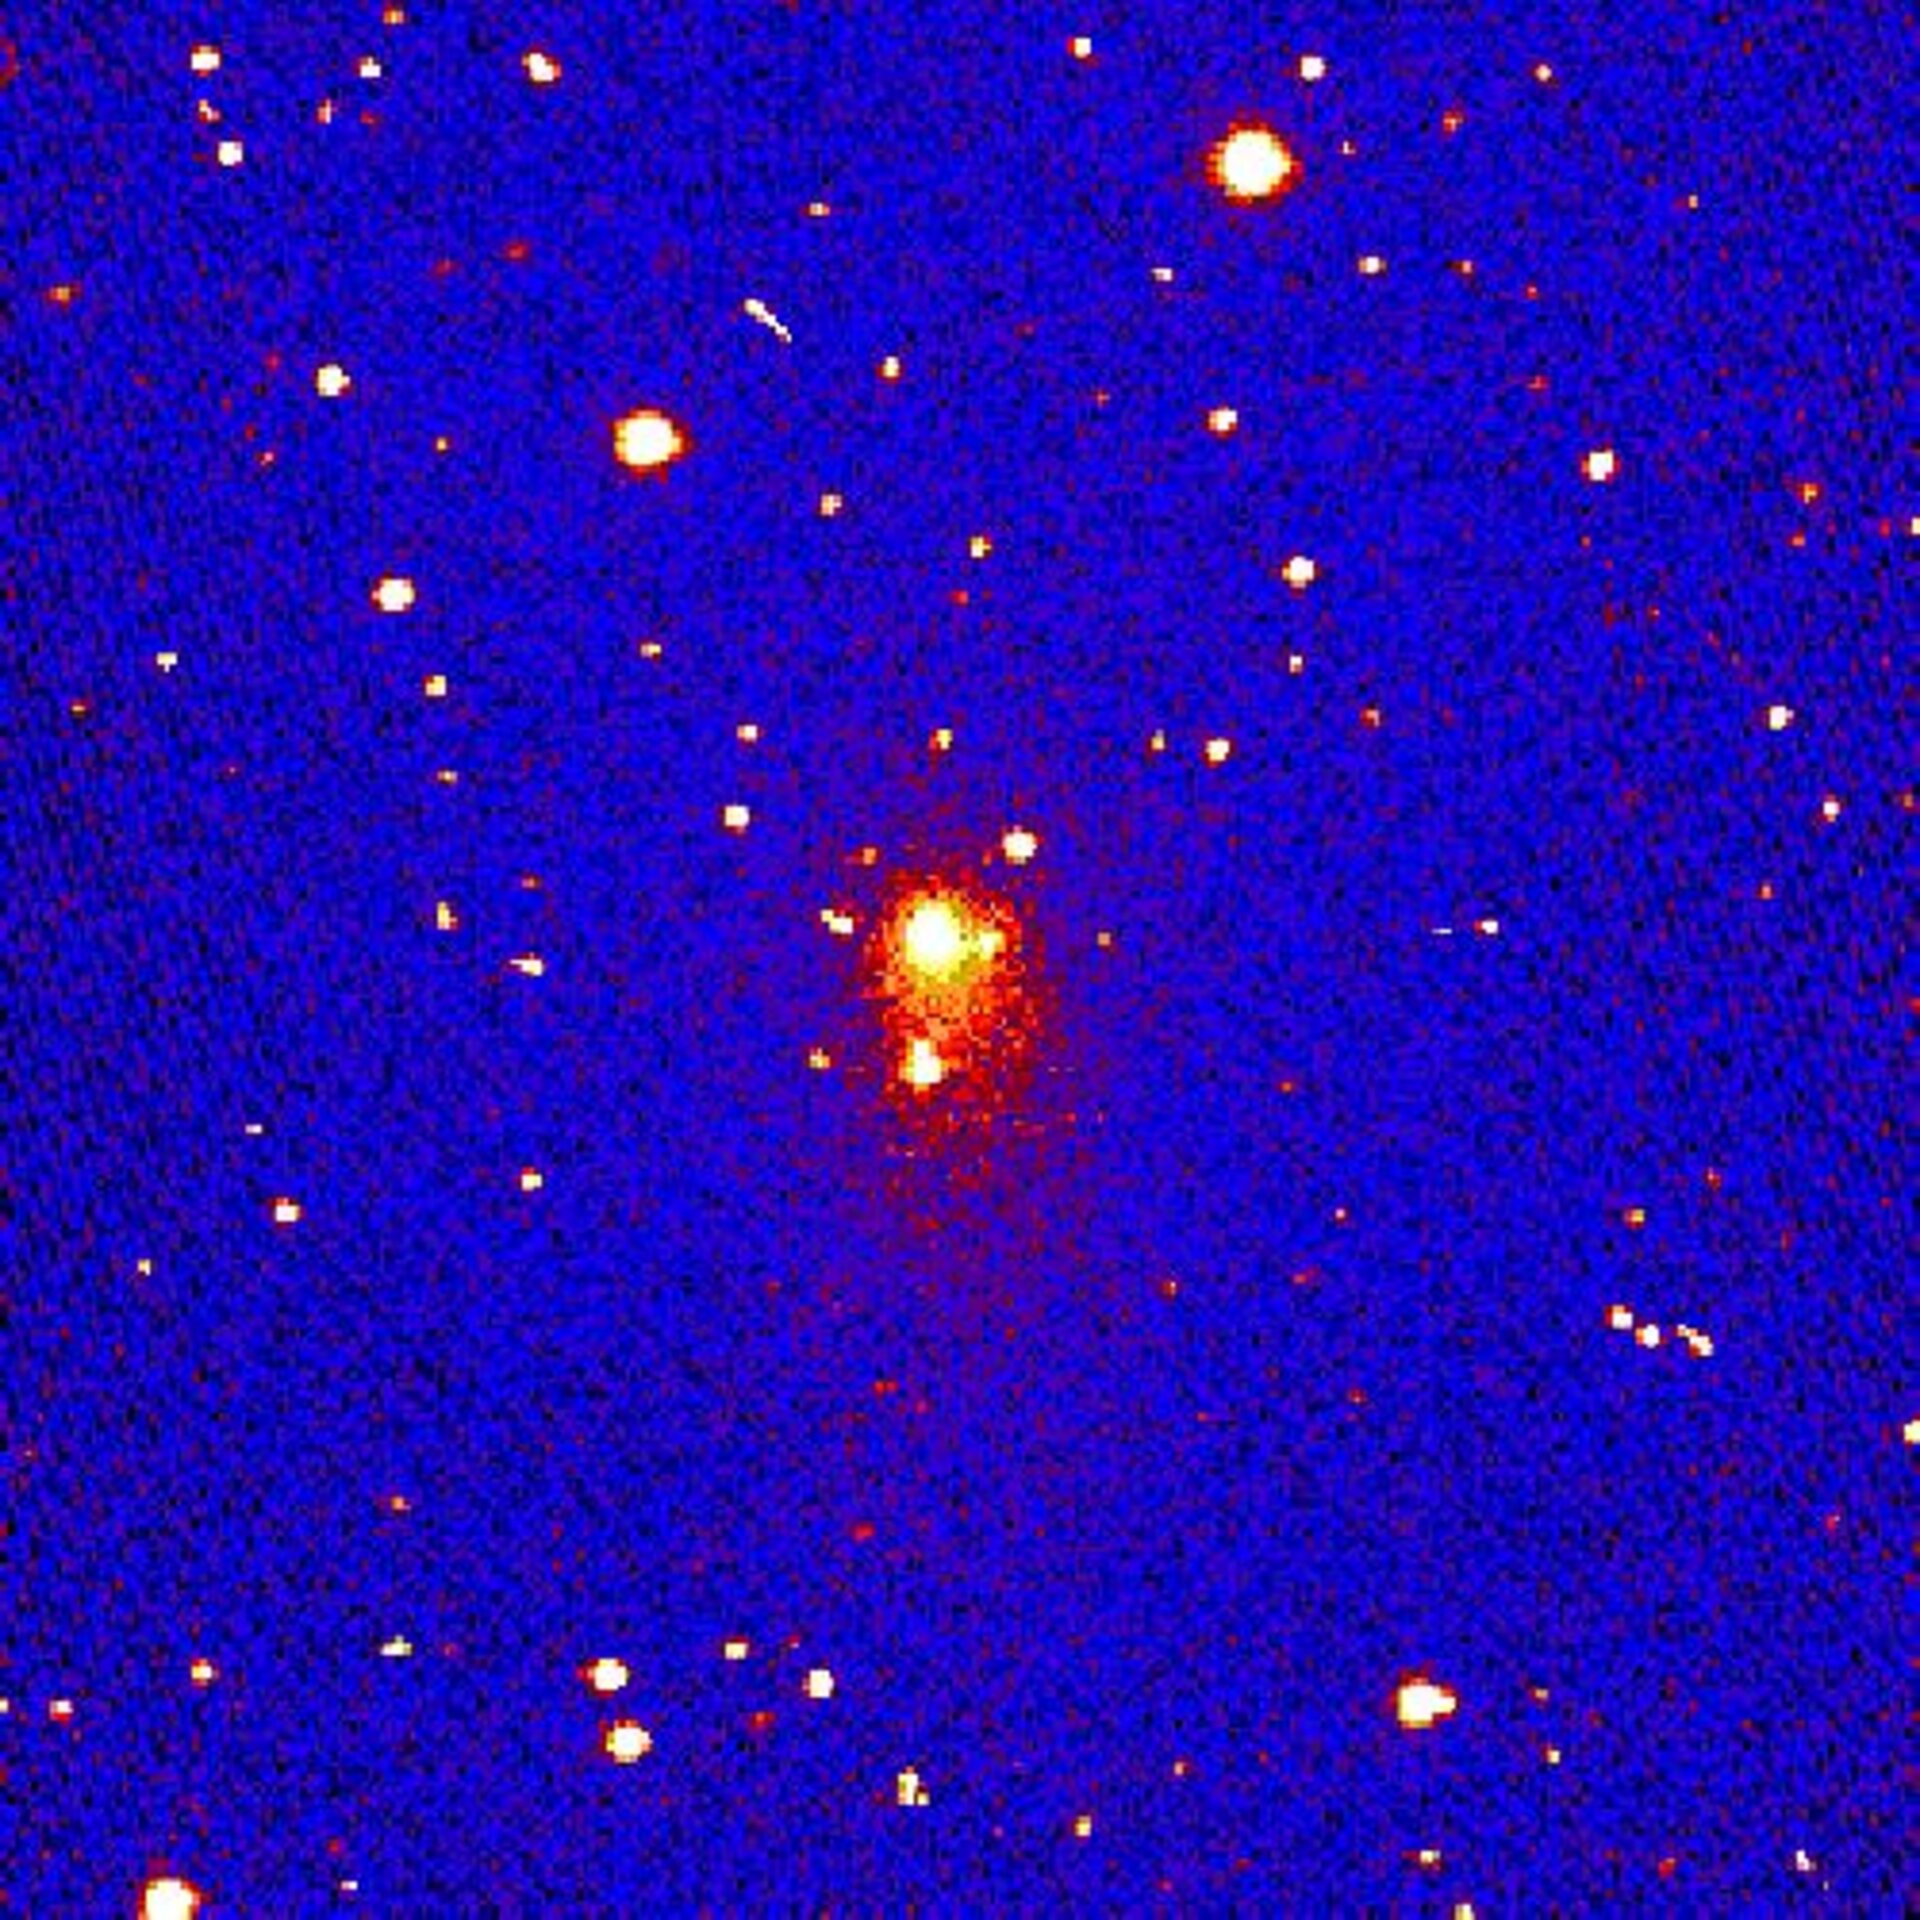 False-colour representation of comet brightness (still)